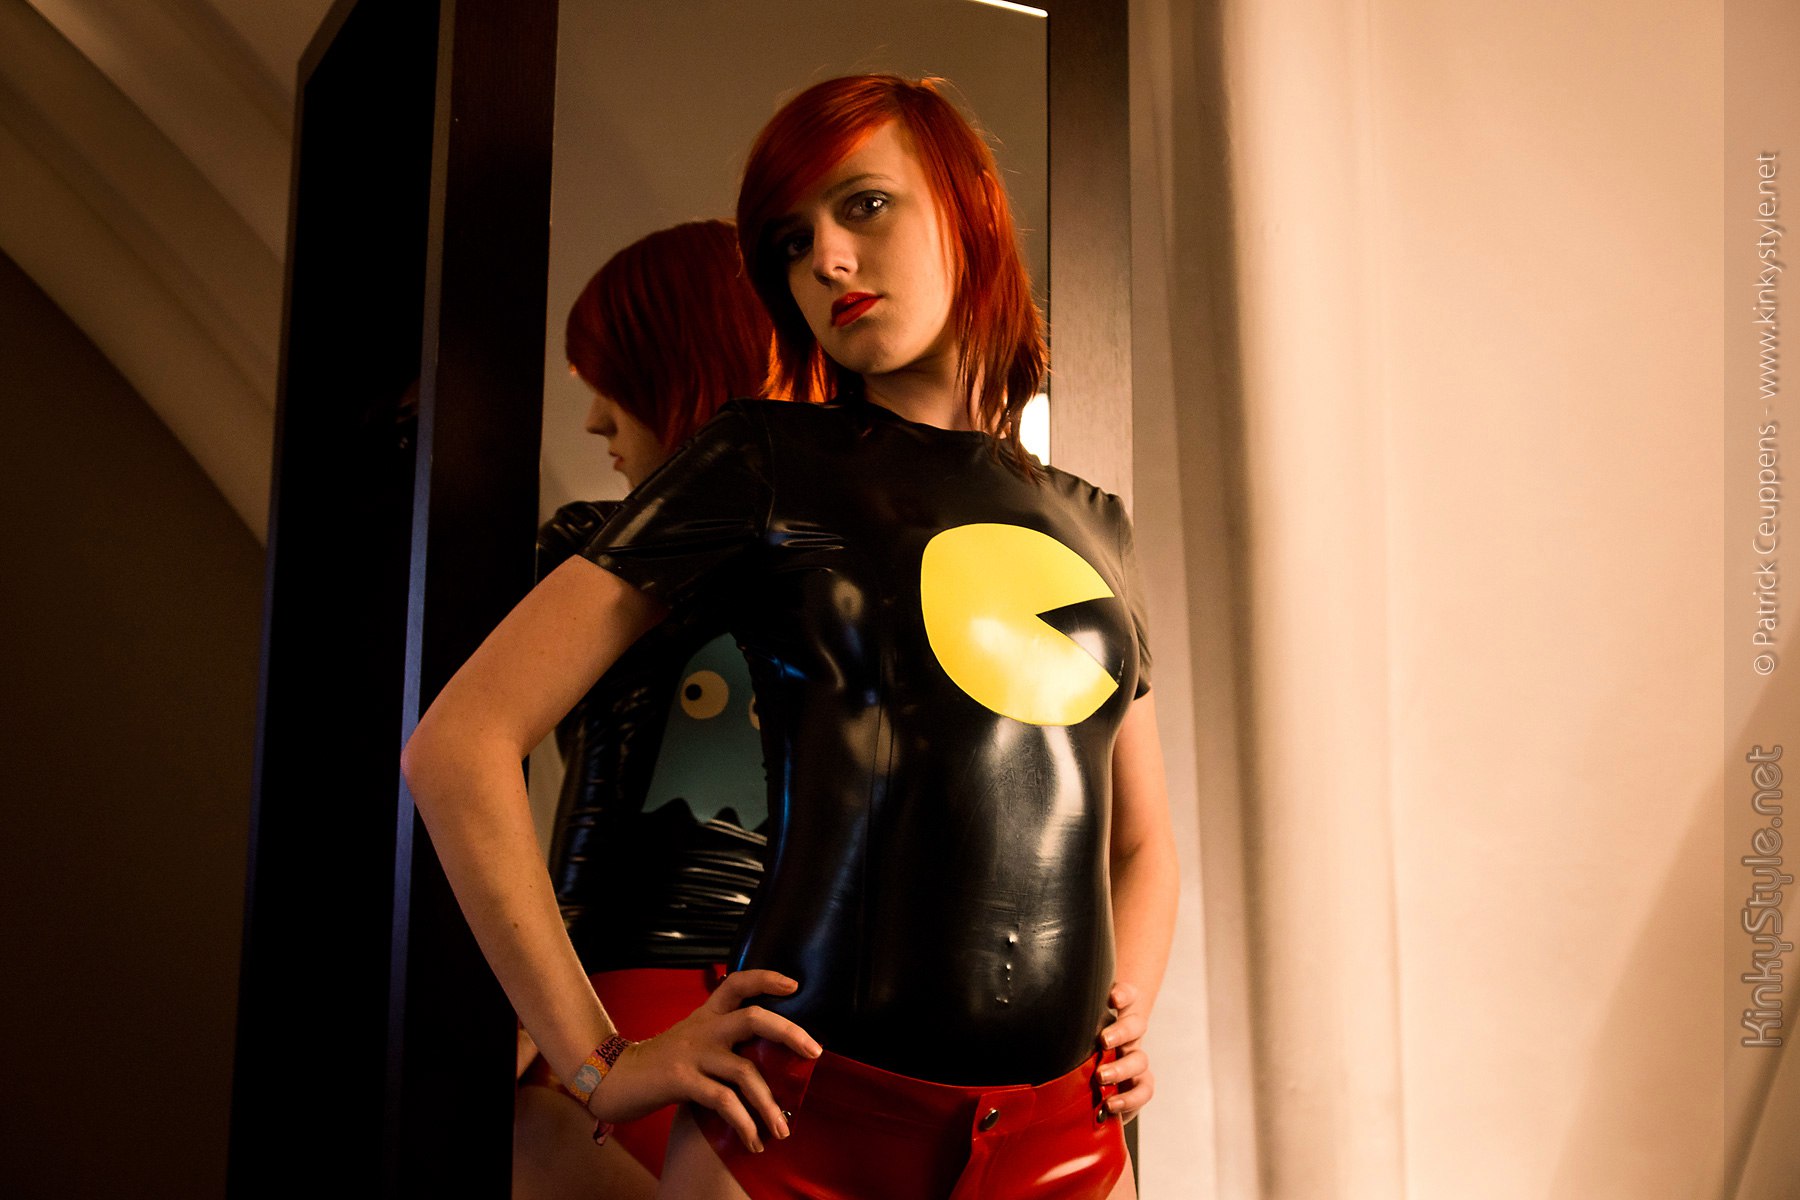 Pac-Man inspired costume